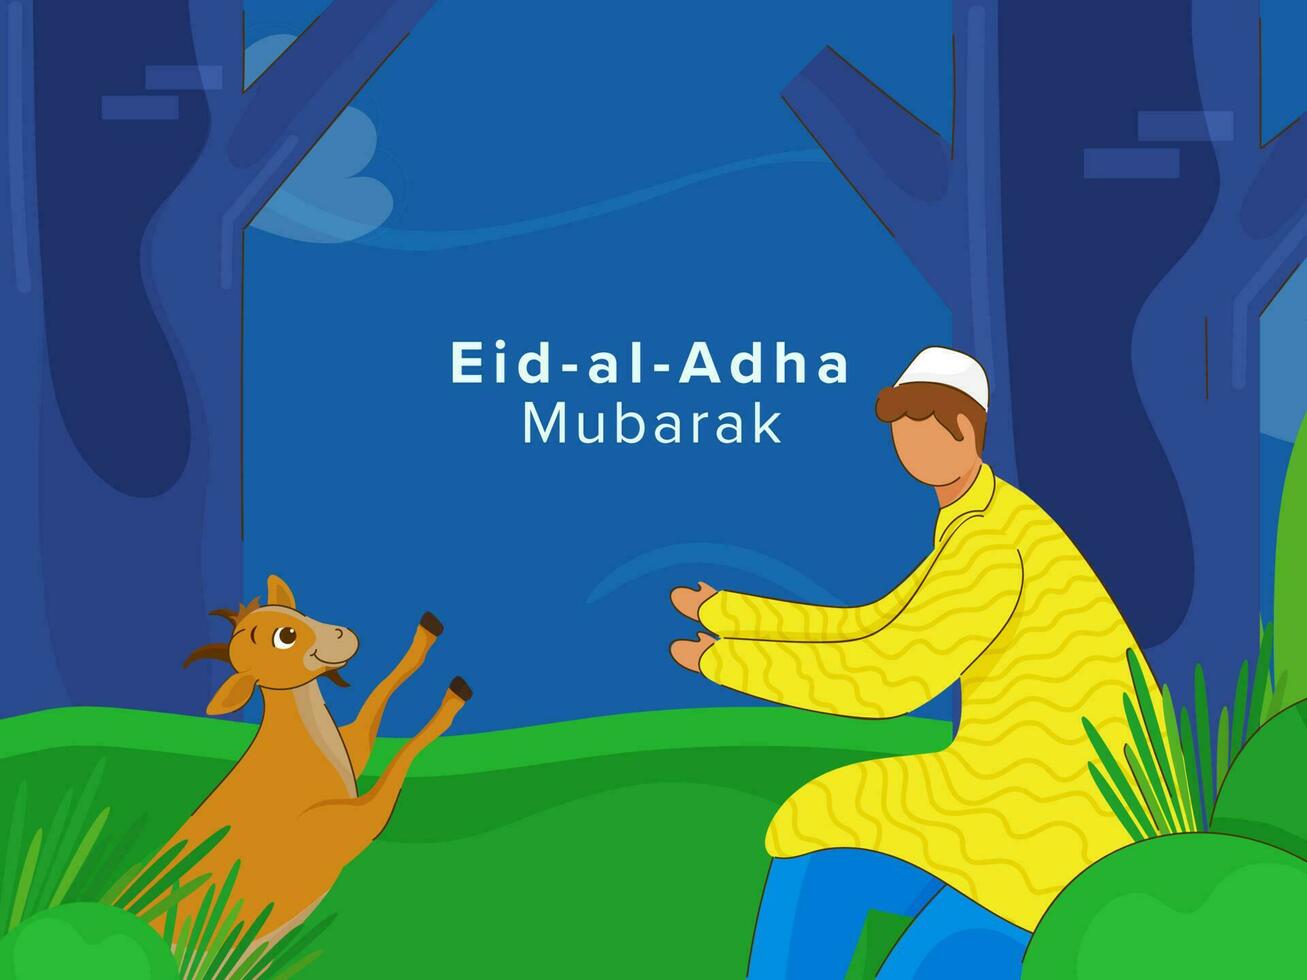 eid-al-adha Mubarak Poster Design, gesichtslos islamisch jung Junge spielen mit Ziege auf Blau und Grün Natur Hintergrund. vektor